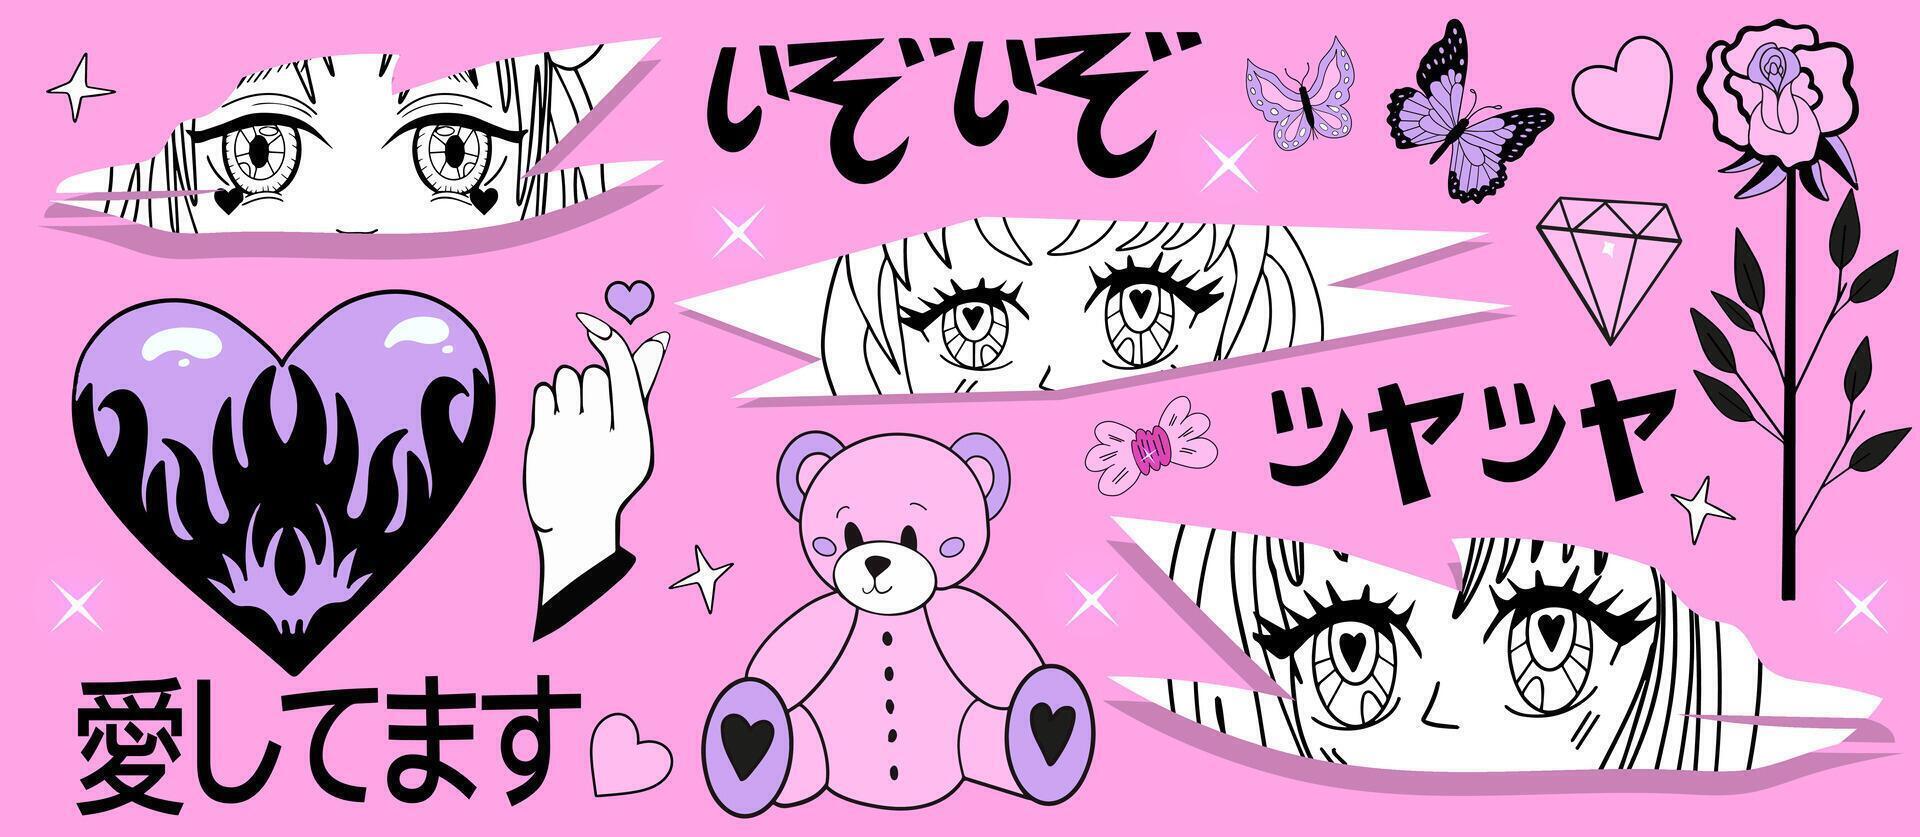 conjunto de y2k rosado femenino clipart. anime chicas, RAM cabeza, corazón manga retro y2k kawaii estilo. traducción. yo amor tú. belleza resplandor, alegría. clasificado japonés onomatopeya. vector